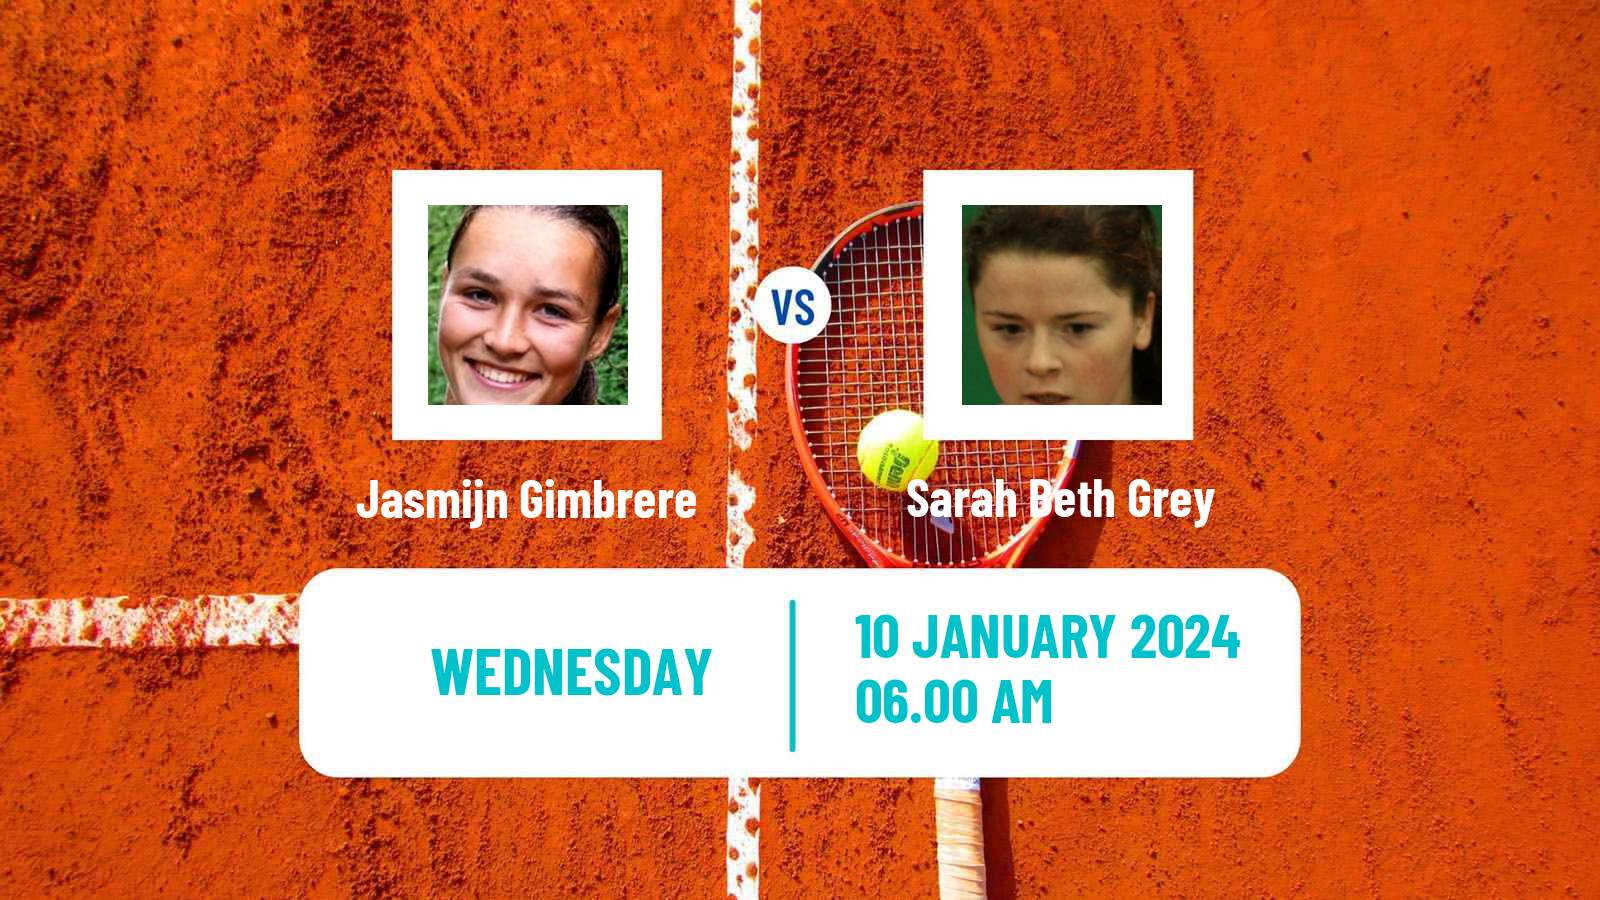 Tennis ITF W35 Loughborough Women Jasmijn Gimbrere - Sarah Beth Grey